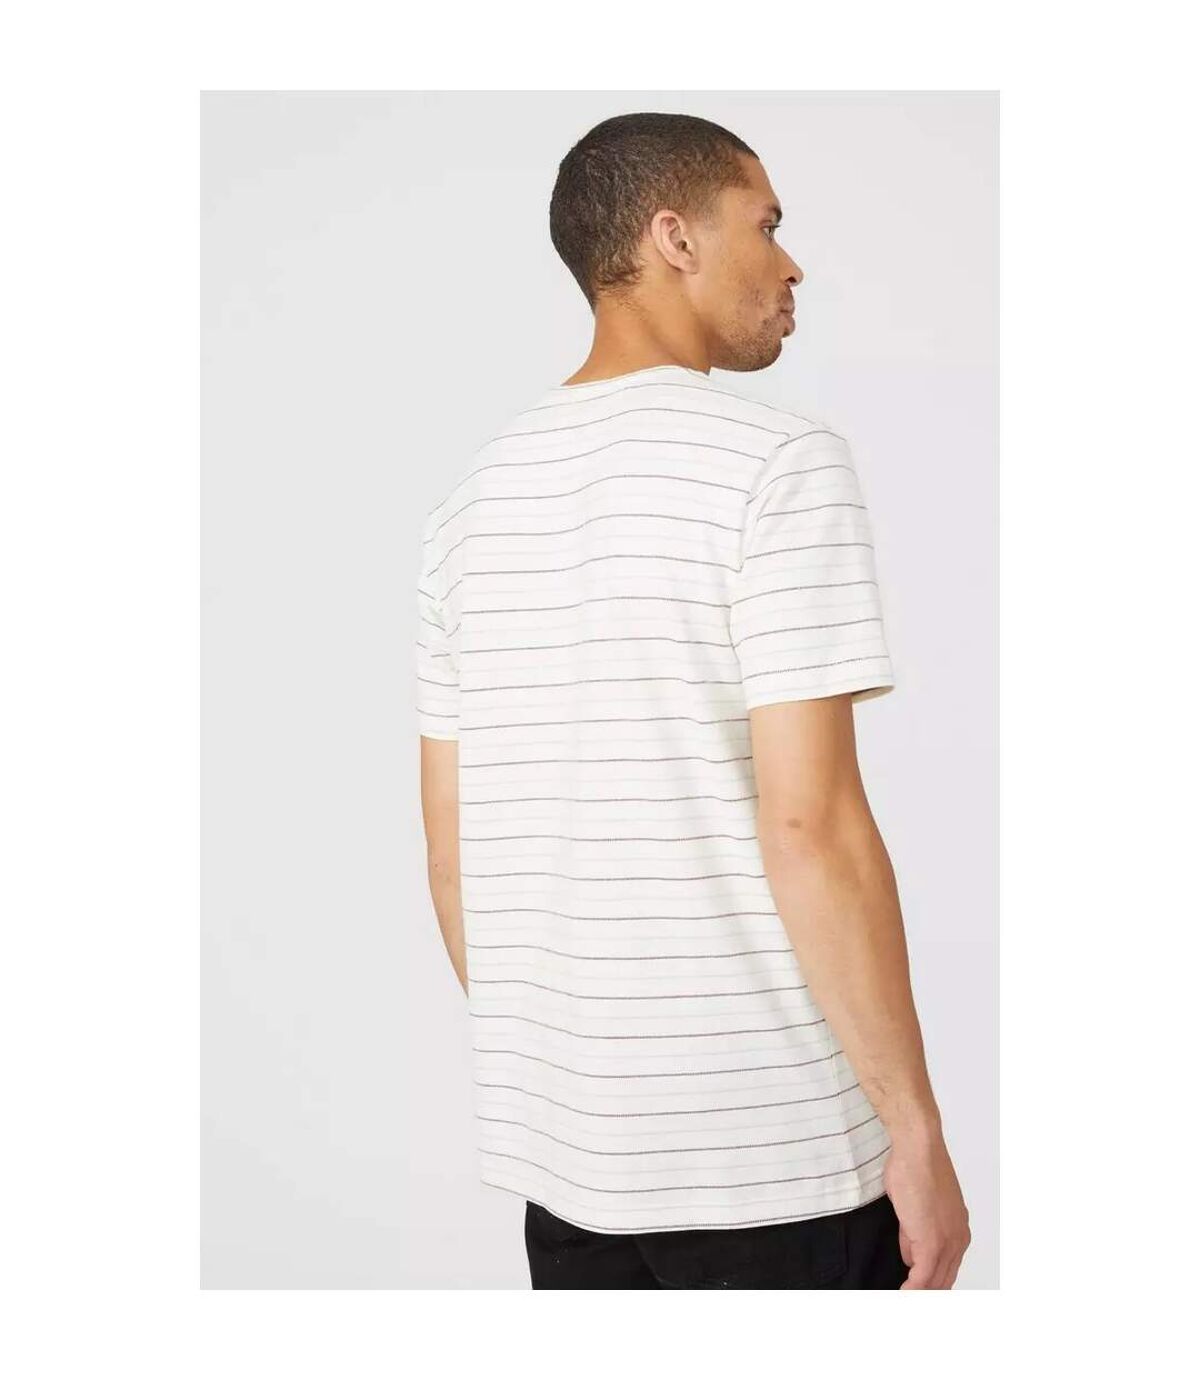 Maine - T-shirt DASH - Homme (Blanc) - UTDH169